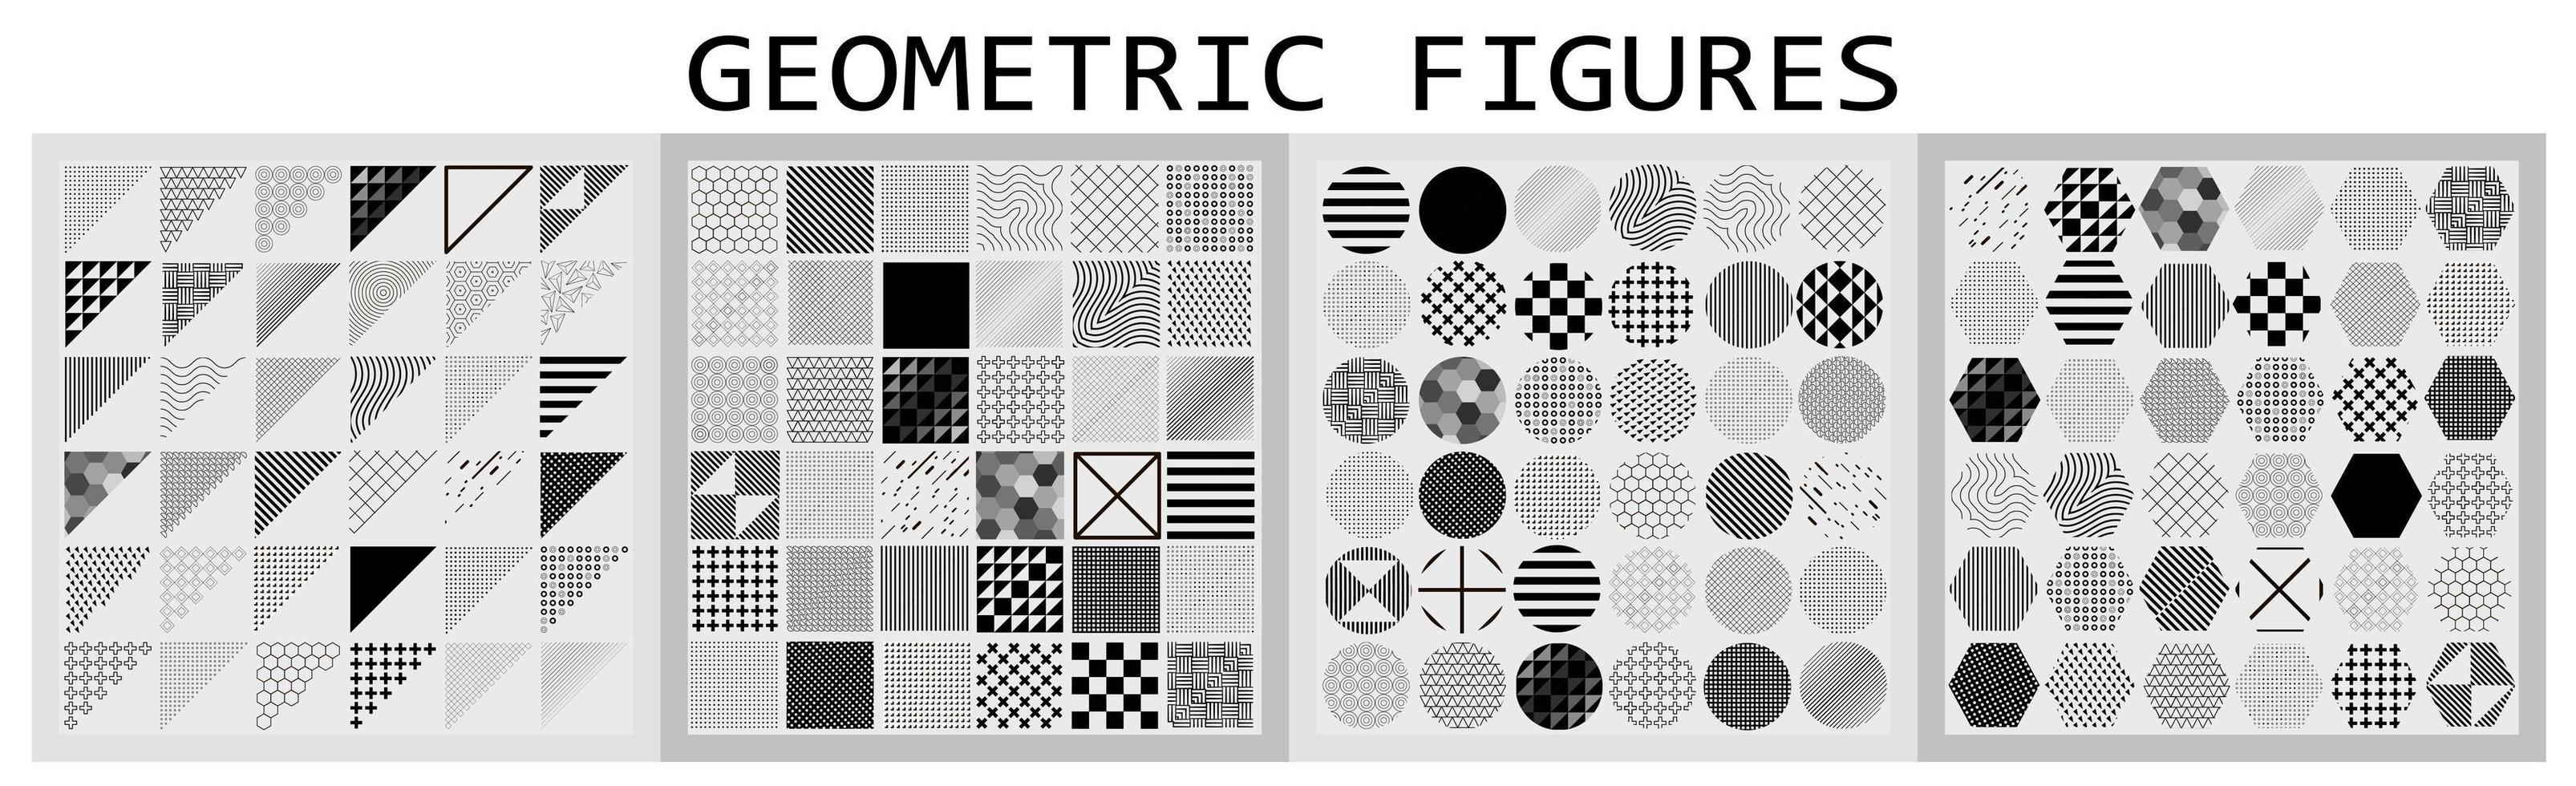 diverses formes géométriques avec différents motifs - vecteur